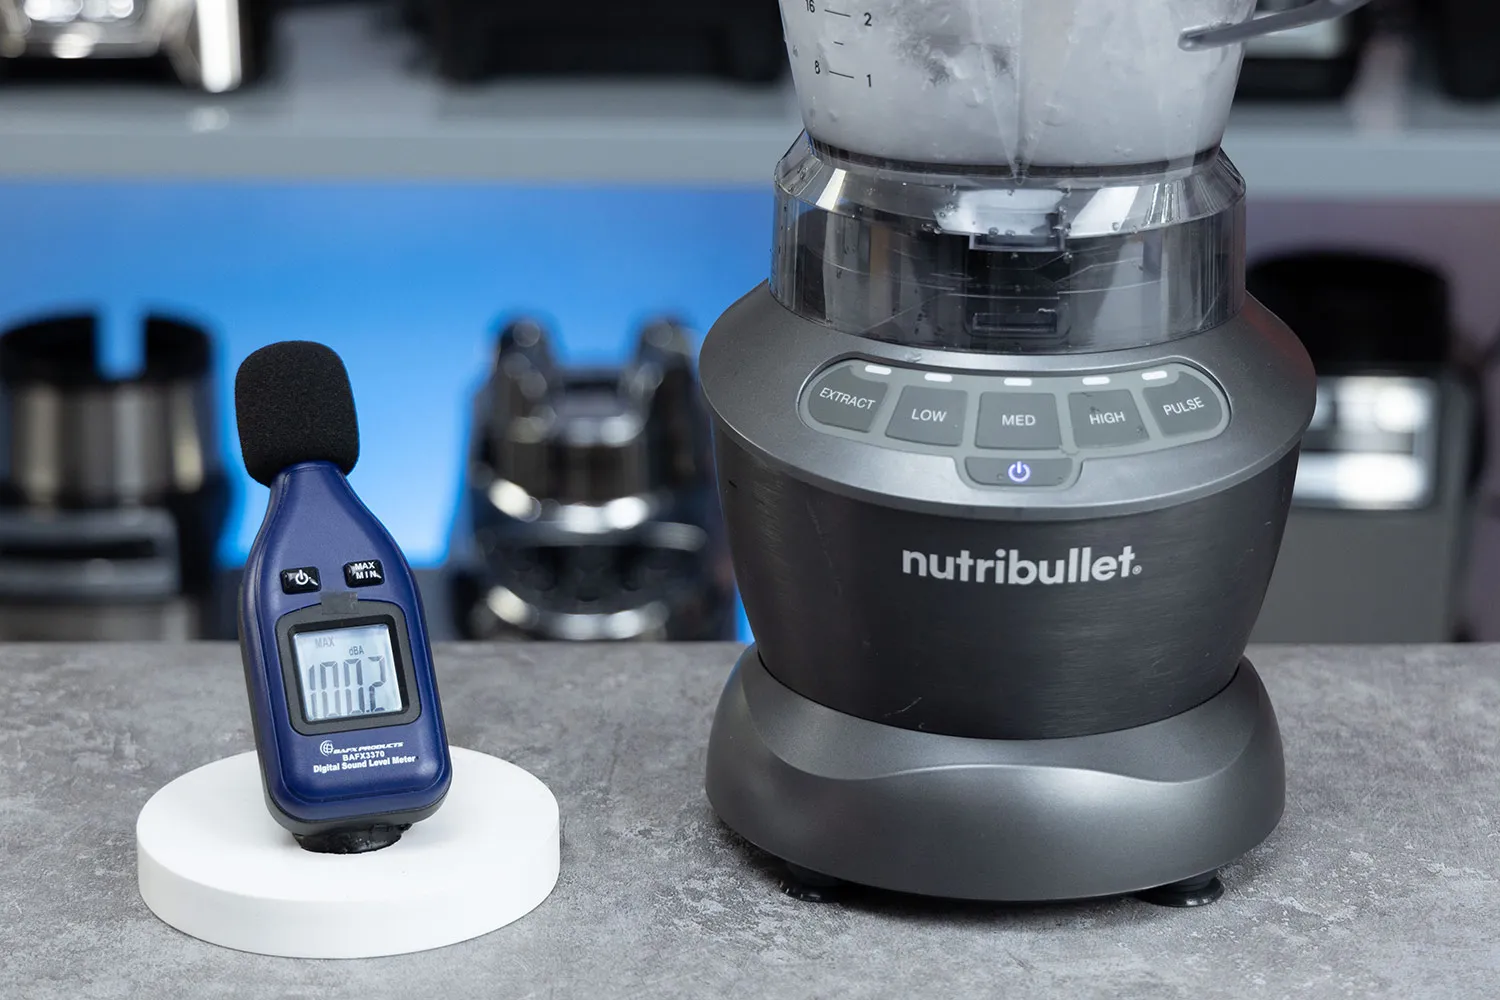 NutriBullet 1200 Watt Blender Combo - Is It Worth It? 